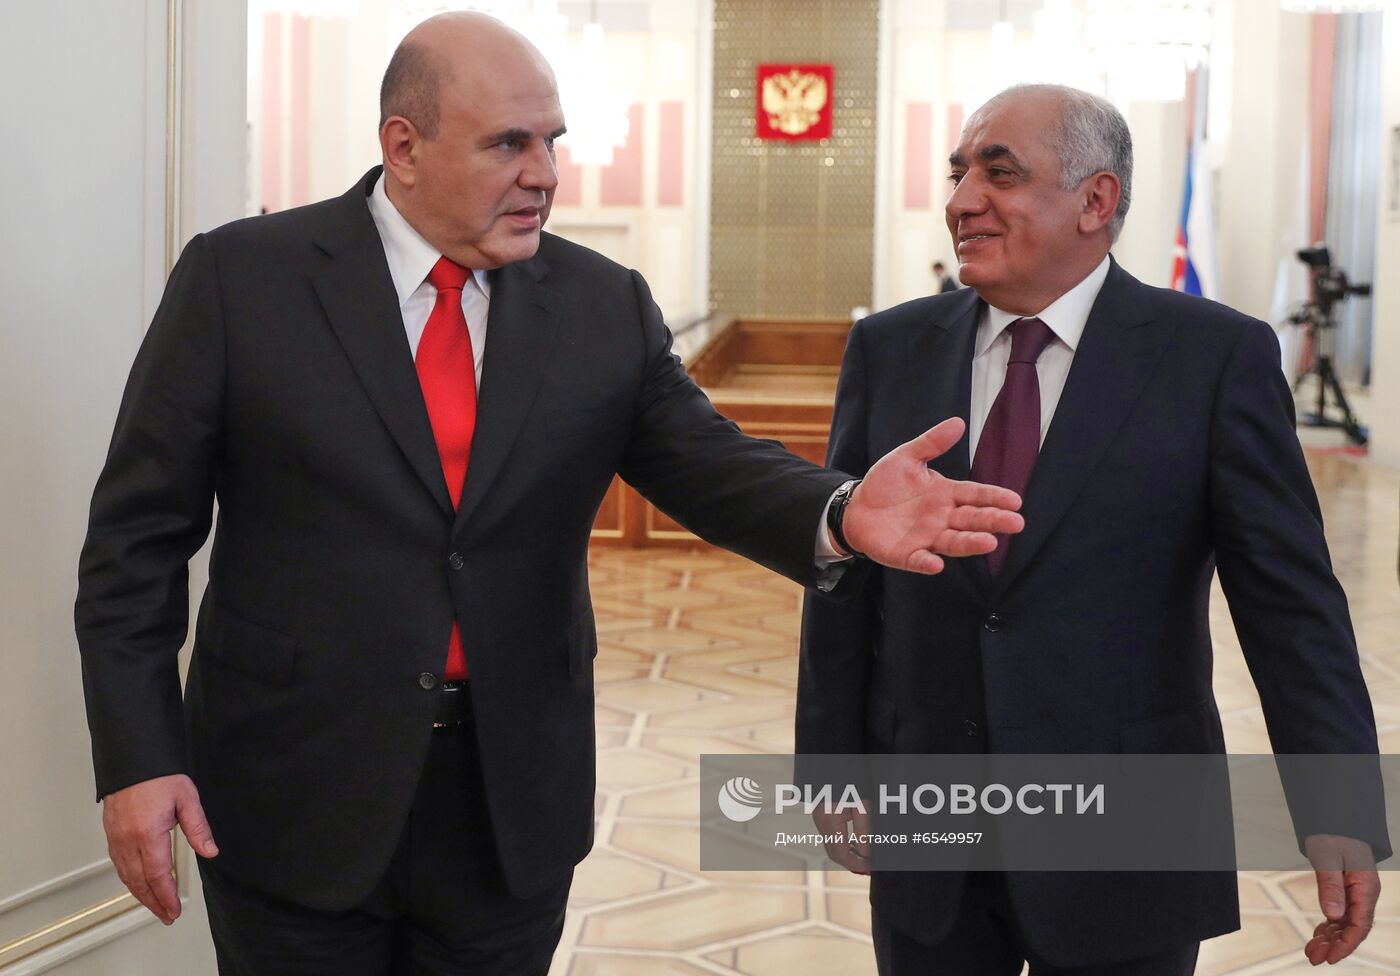 Премьер-министр РФ М. Мишустин встретился с премьер-министром Азербайджана А. Асадовым